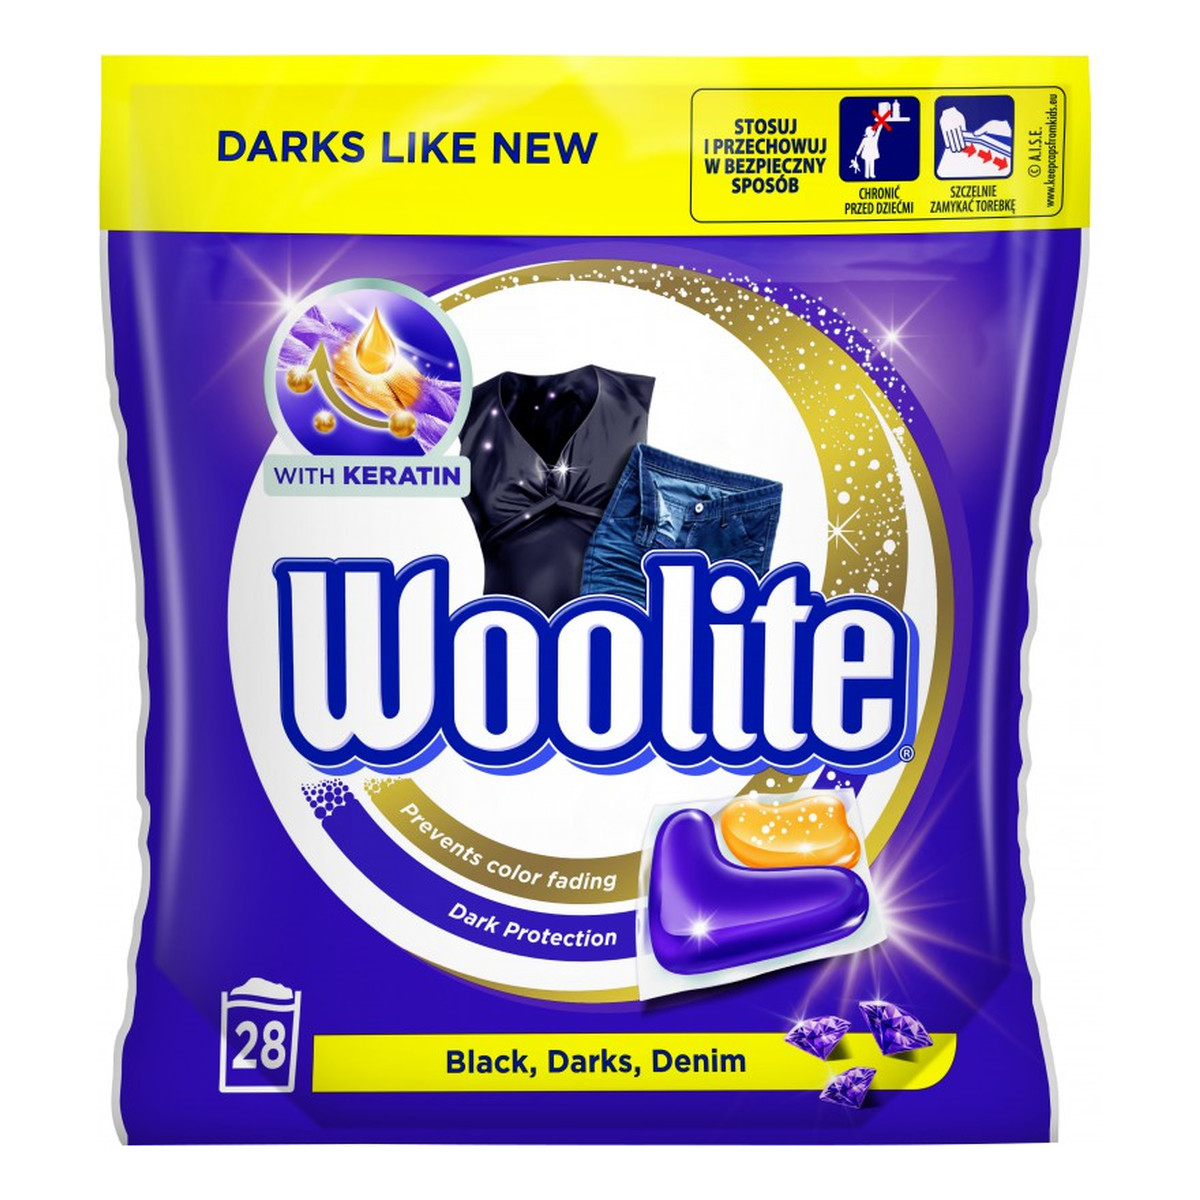 Woolite Black Darks Denim kapsułki do prania do tkanin ciemnych z keratyną 28szt